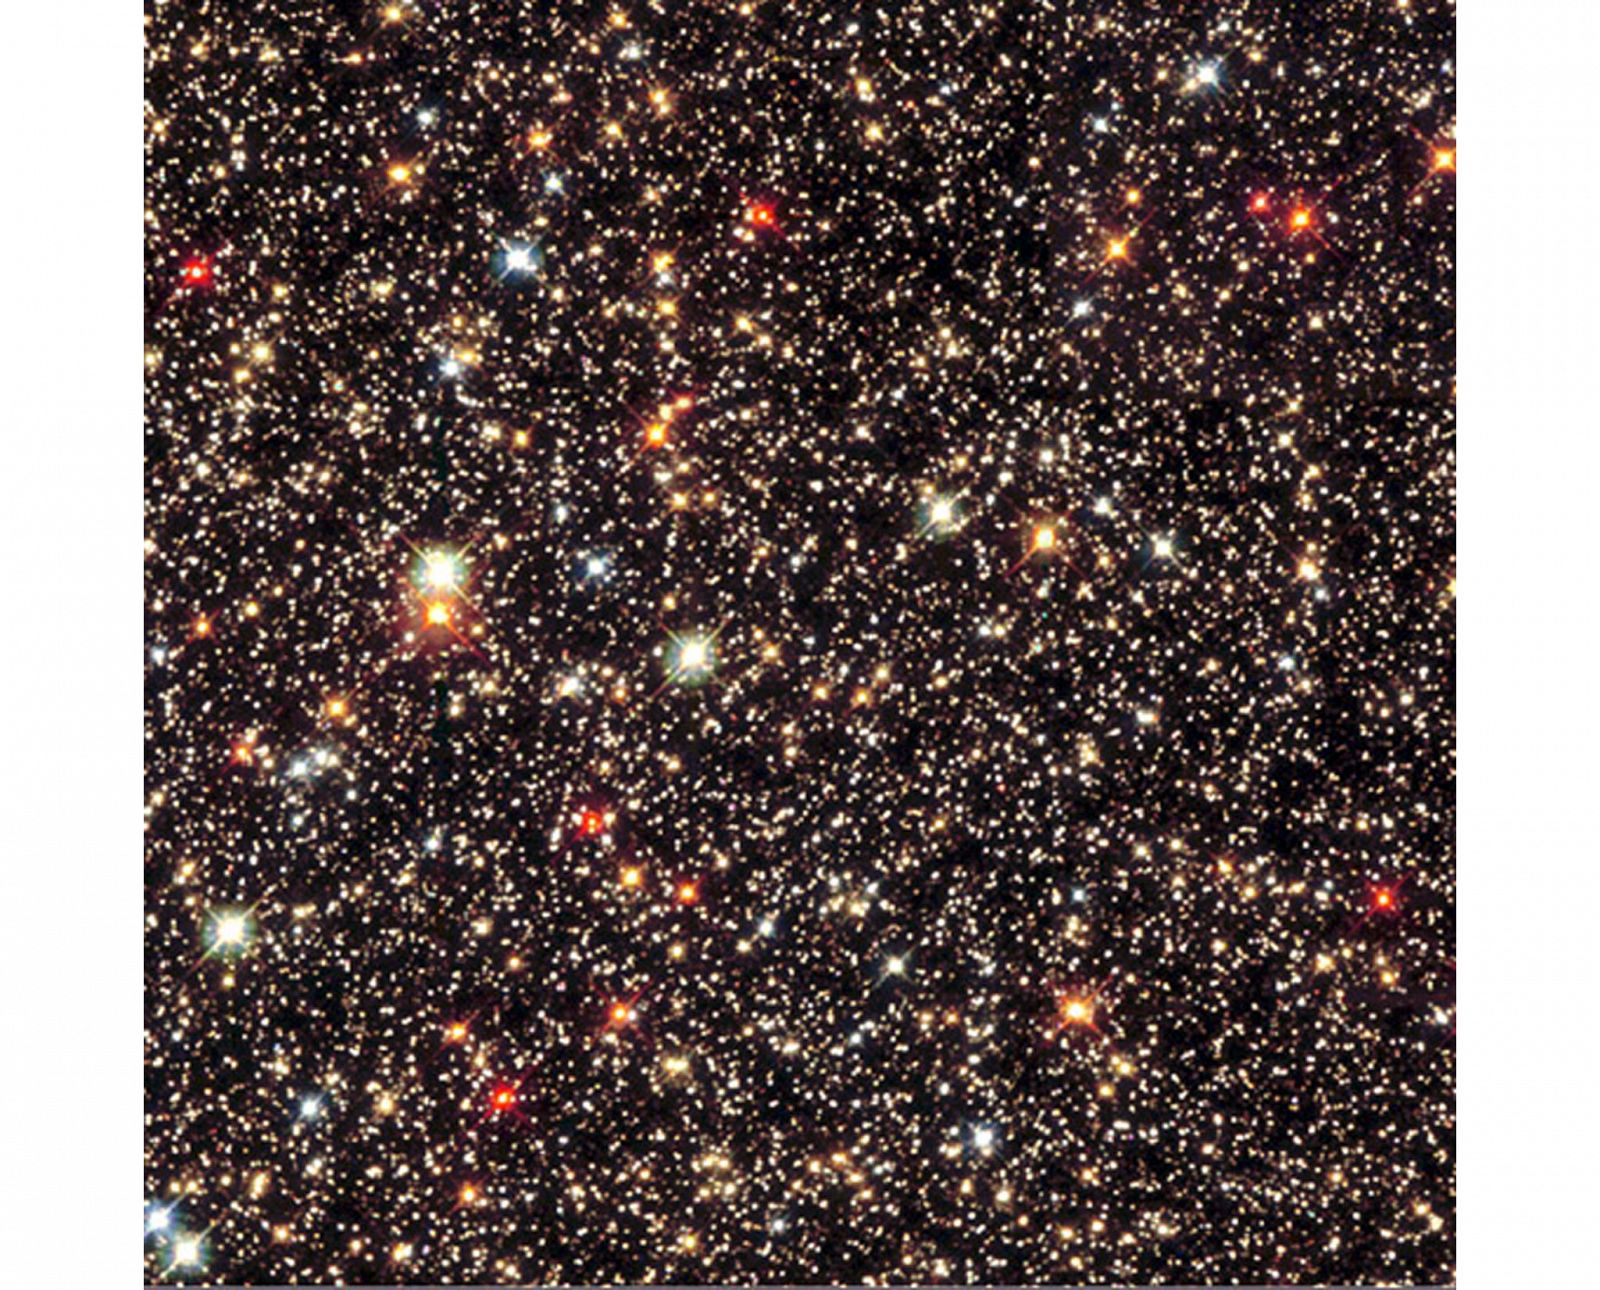 Una imagen de estrellas brillando en la Vía Láctea tomada por el telescopio Hubble de la NASA.